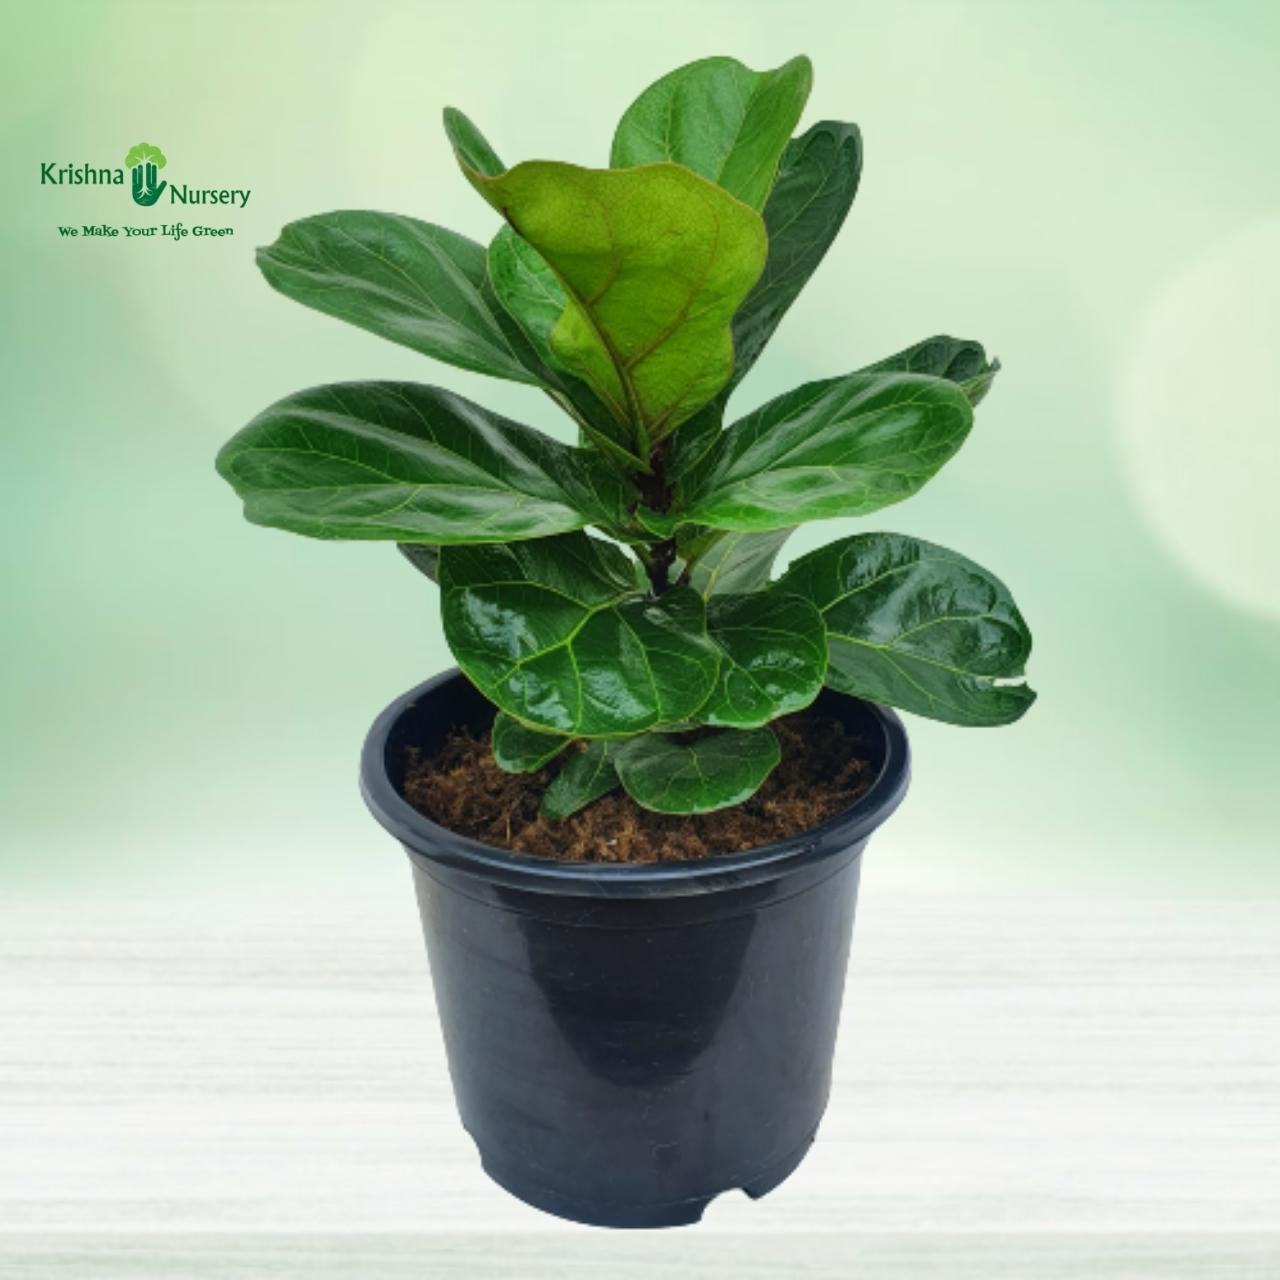 Fiddle Leaf Fig Plant - Gifting Plants -  - fiddle-leaf-fig-plant -   